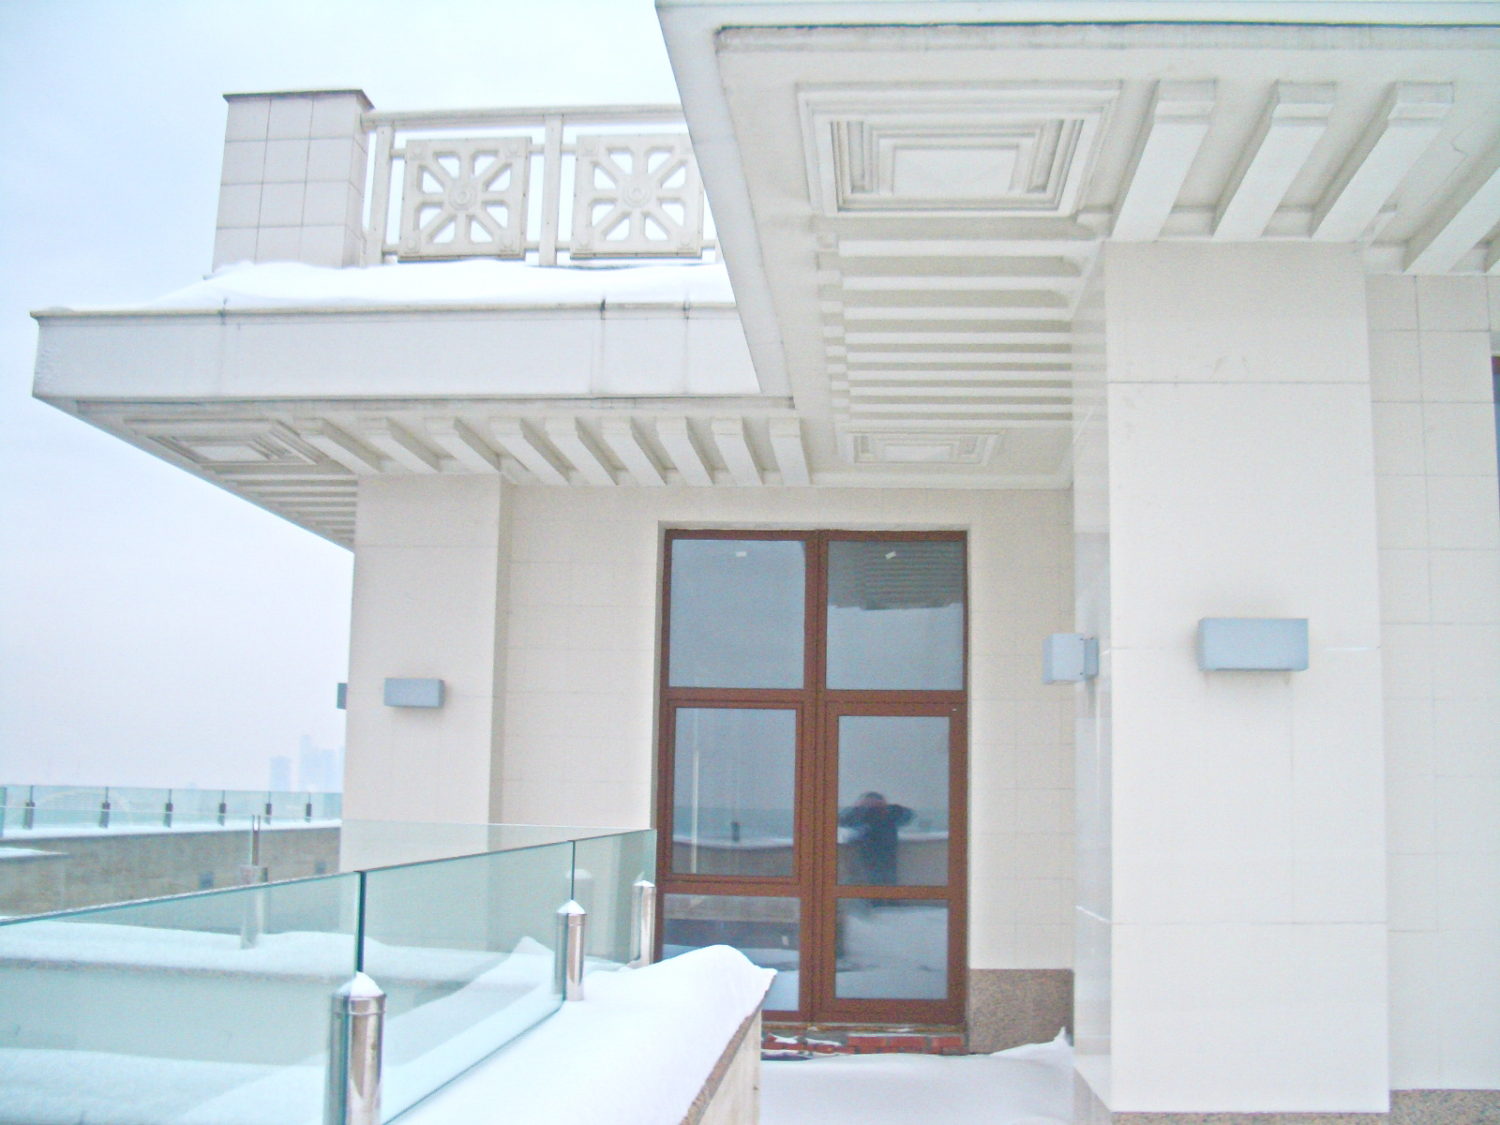 КВ БЮРО Пентхаус на Соколе дизайн фото балкон